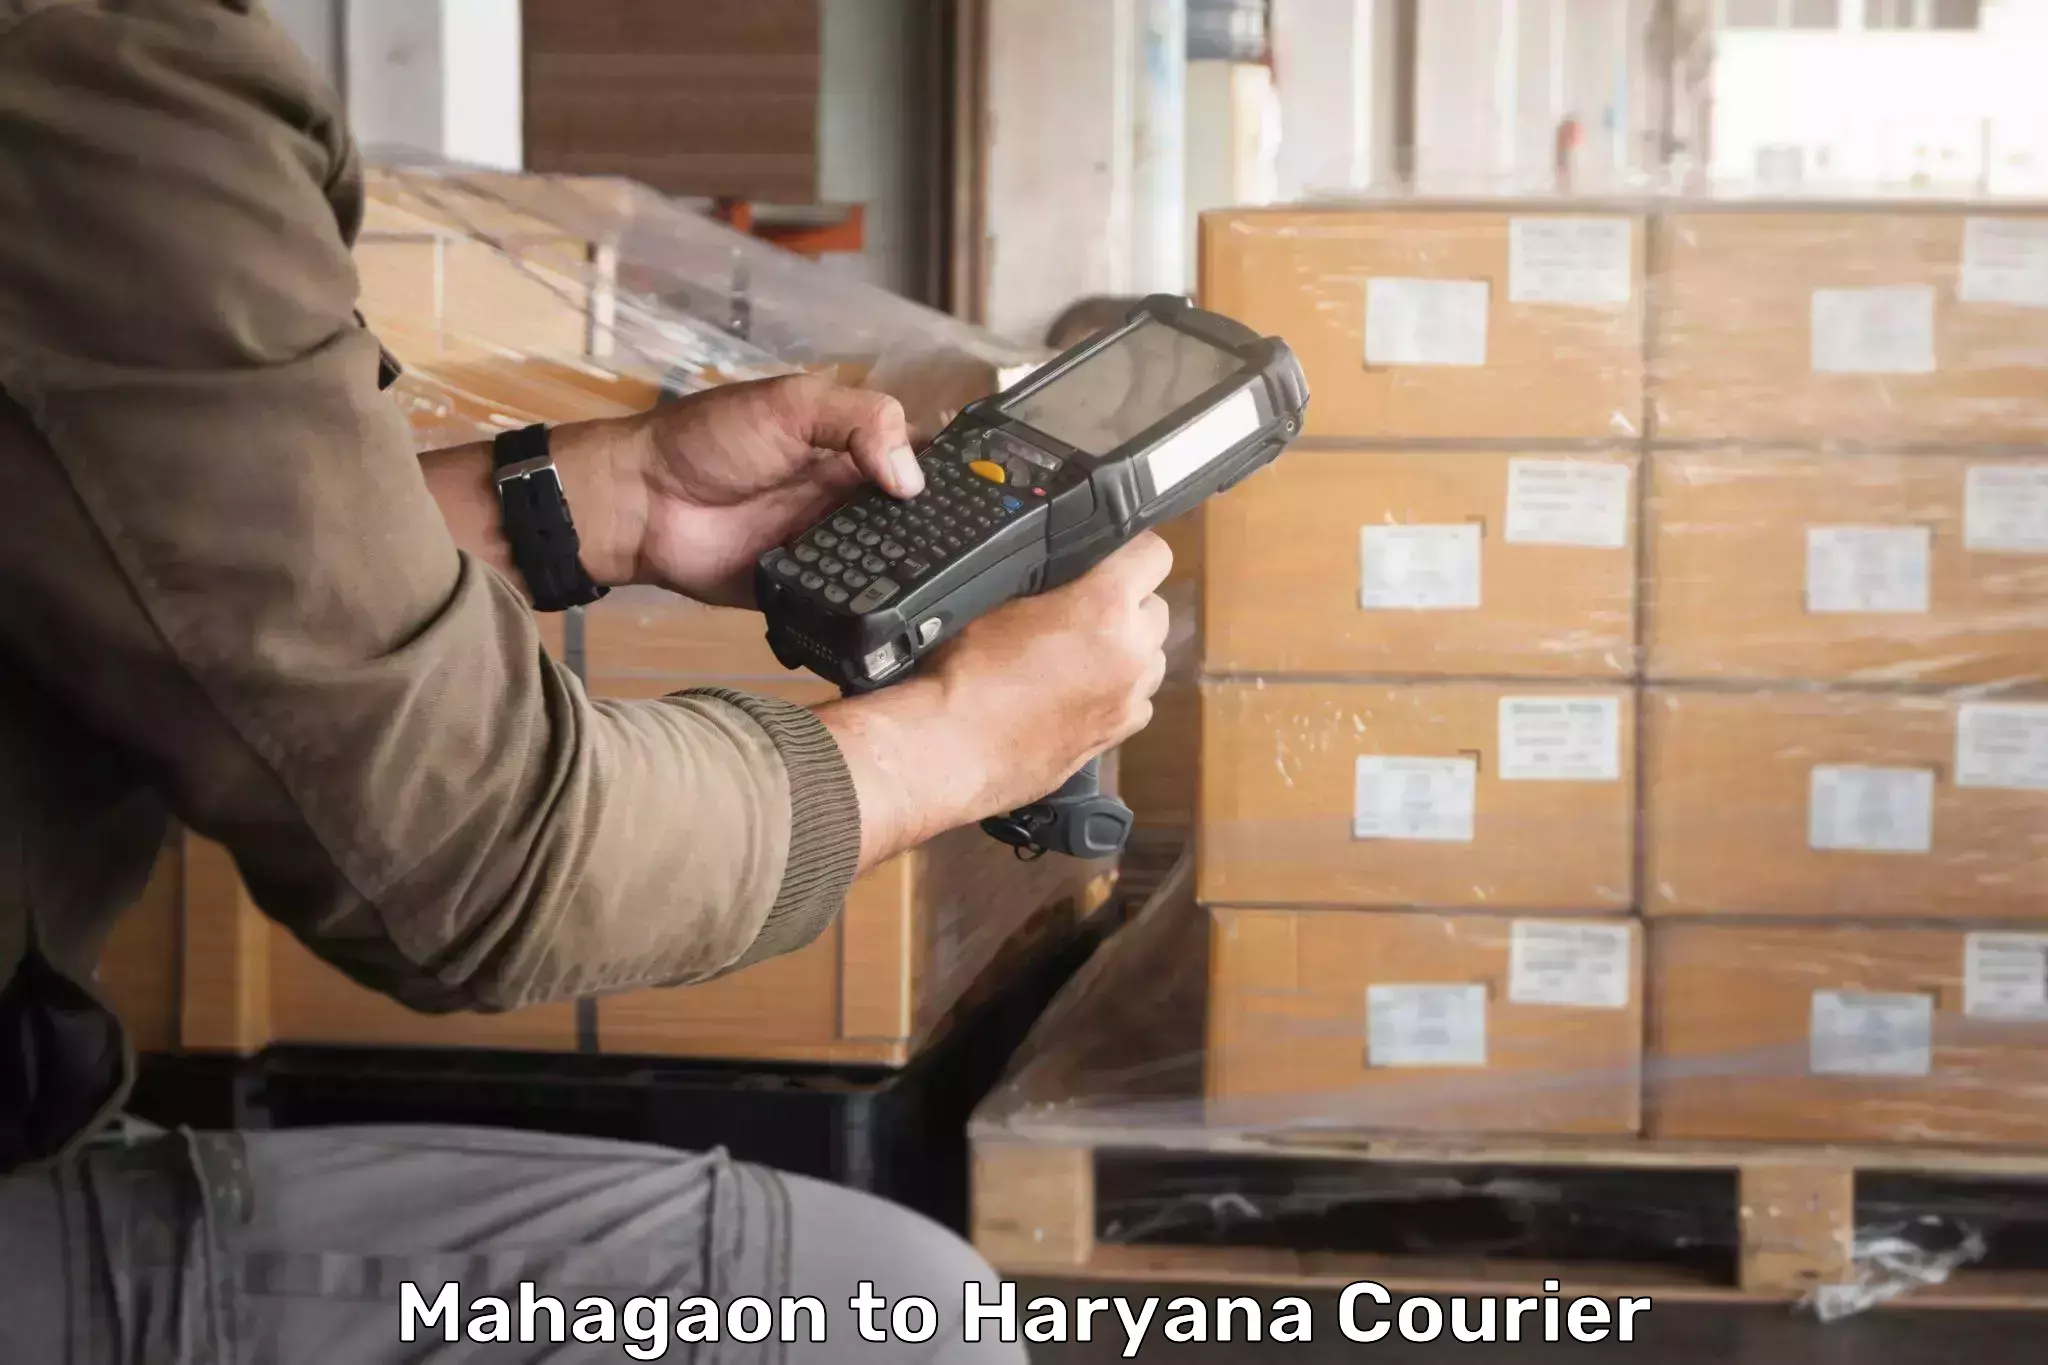 24/7 courier service Mahagaon to Narwana